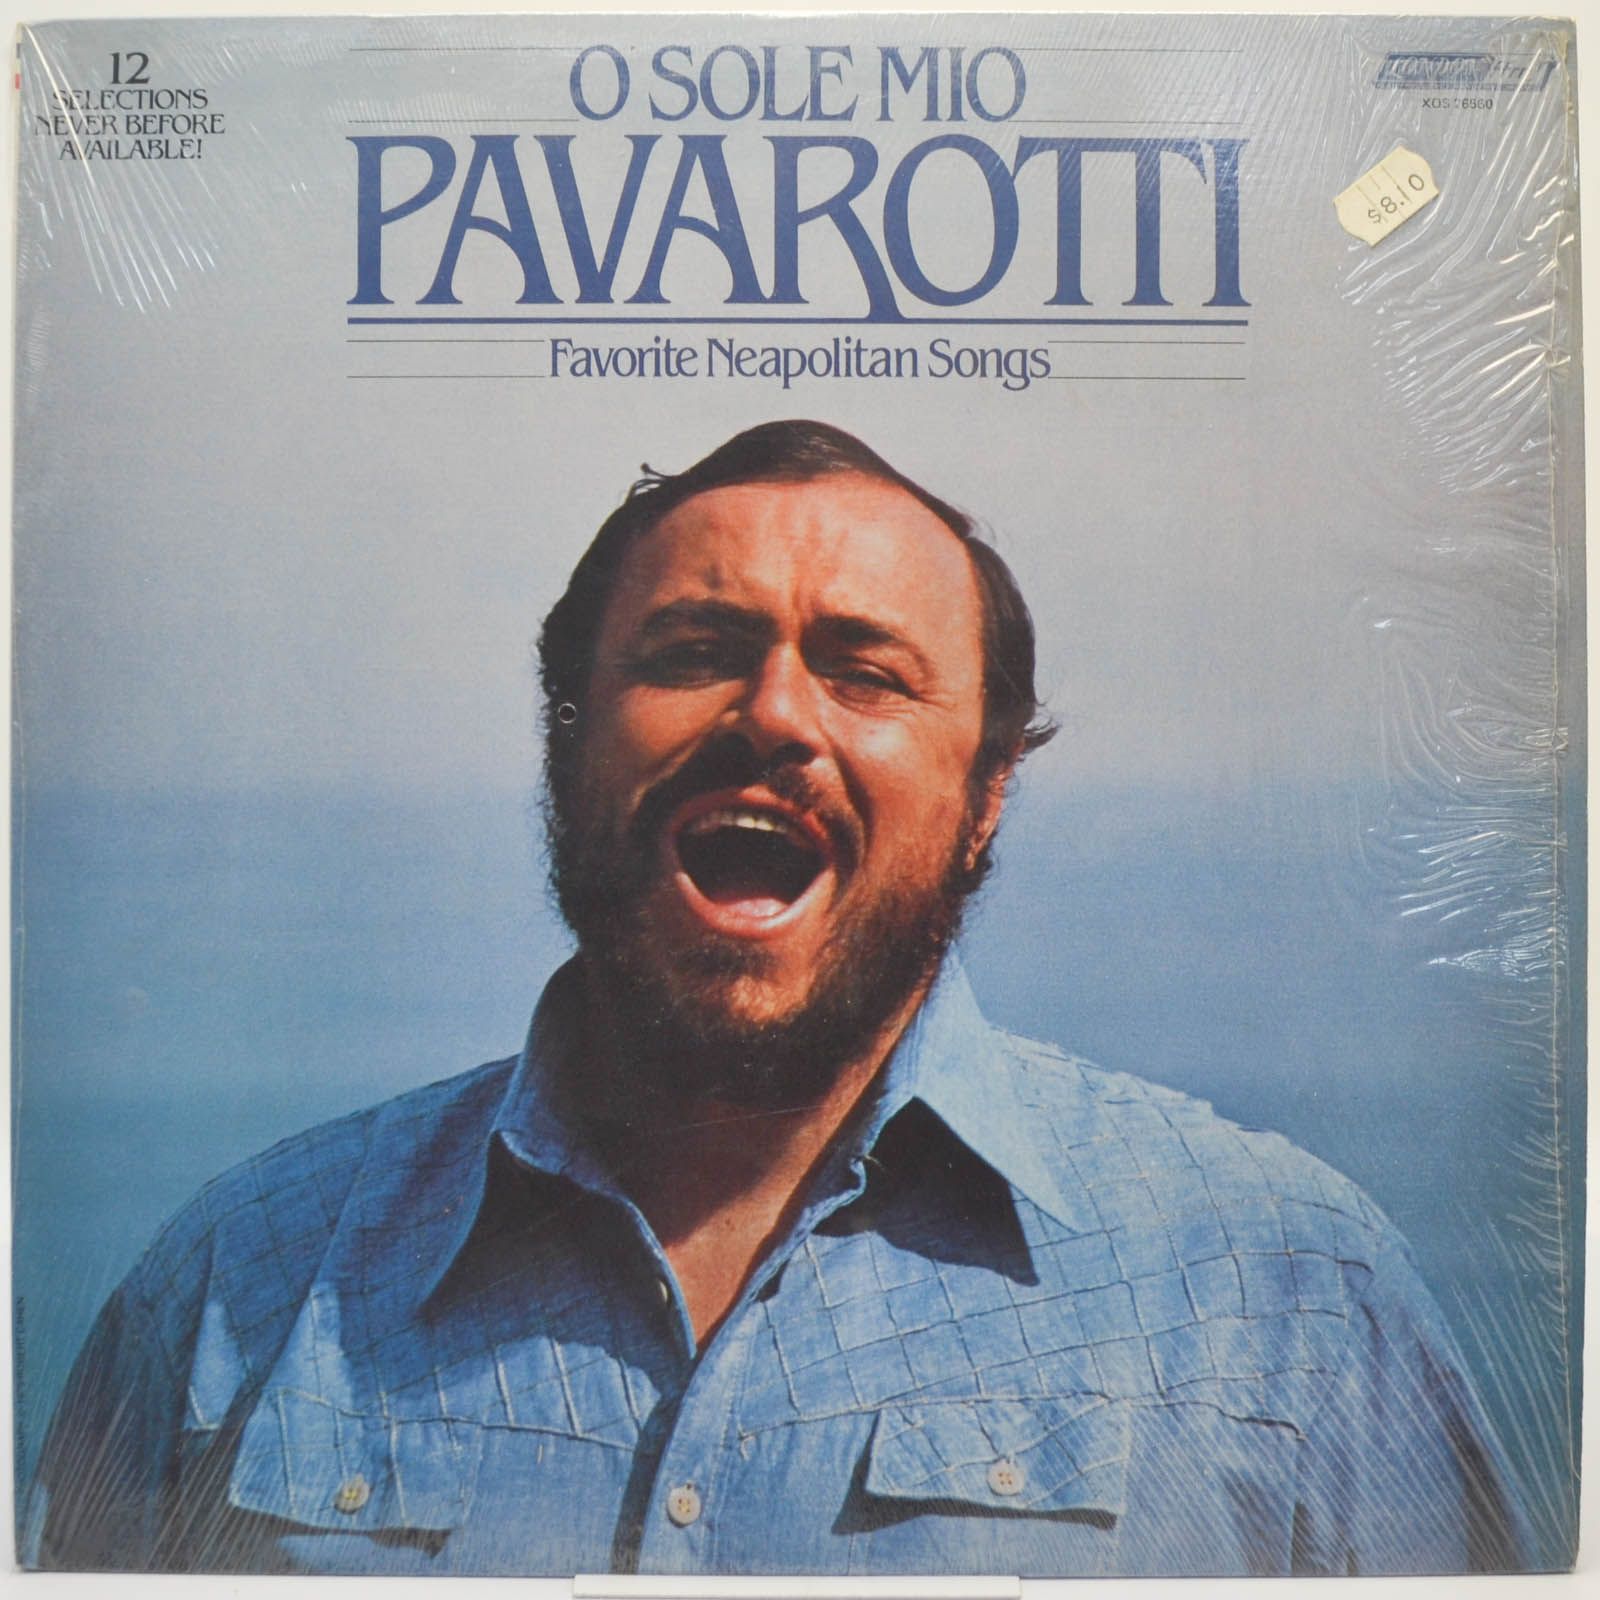 Luciano Pavarotti — O Sole Mio Favorite Neapolitan Songs, 1979